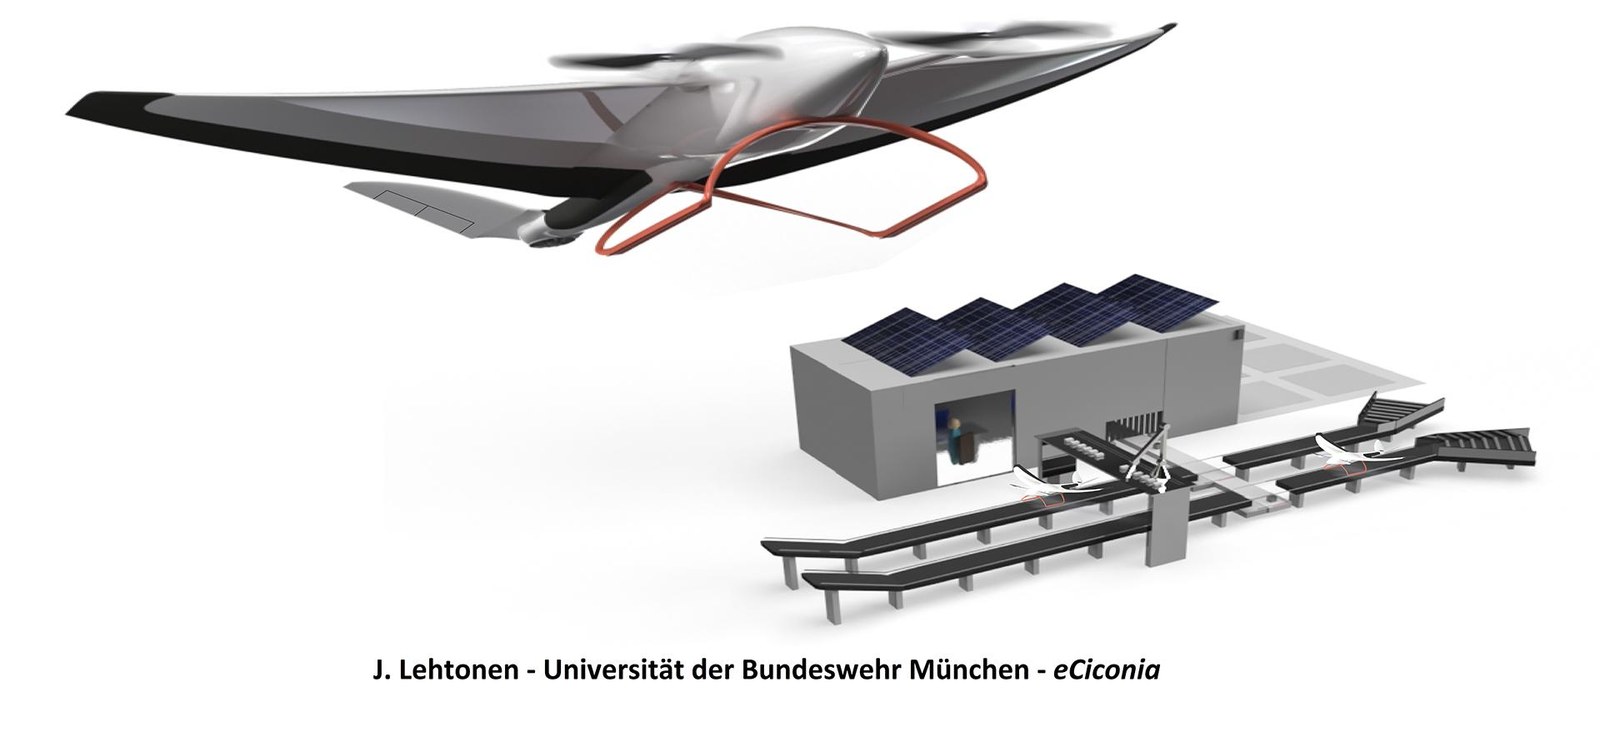 eCiconia - Konzept des Teams der Universität der Bundeswehr München